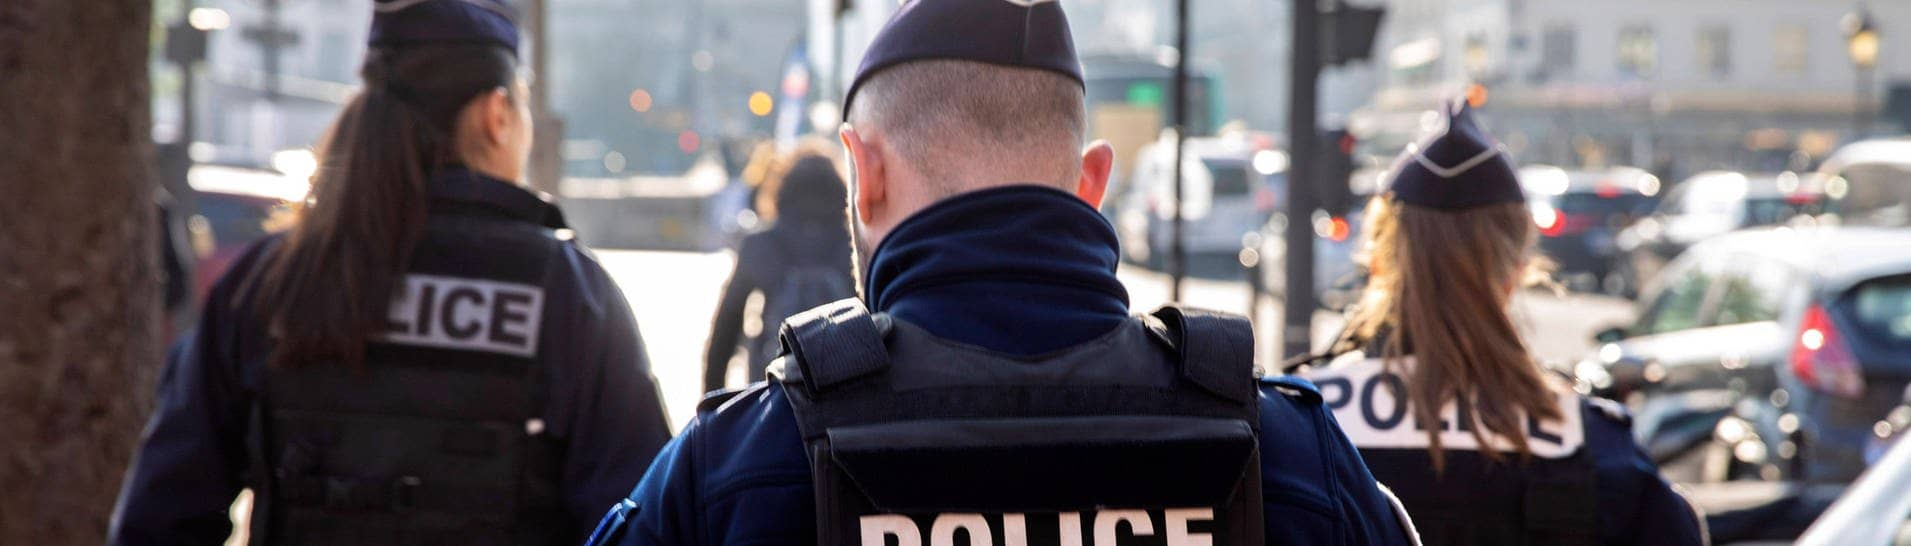 Polizeistreife der französischen Nationalpolizei. Man sieht drei Polizisten von hinten